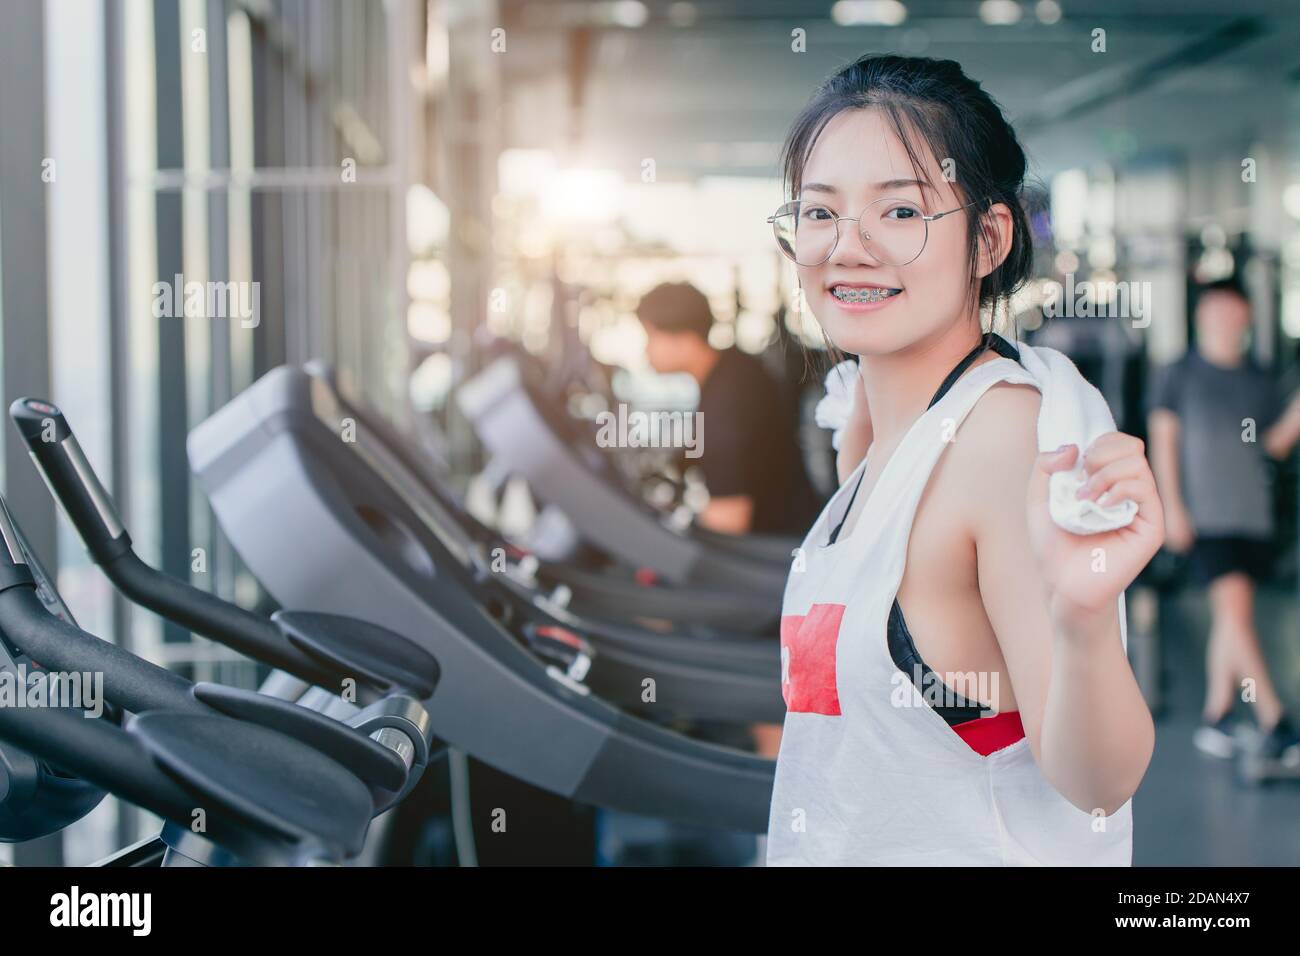 Asiatische Teenager Zahnspange Mädchen Cardio-Training Übung im Sportverein Mit einem Handtuch auf den Schultern lächelnd nach dem Training auf dem Laufband In der Turnhalle suchen Camcorder Stockfoto